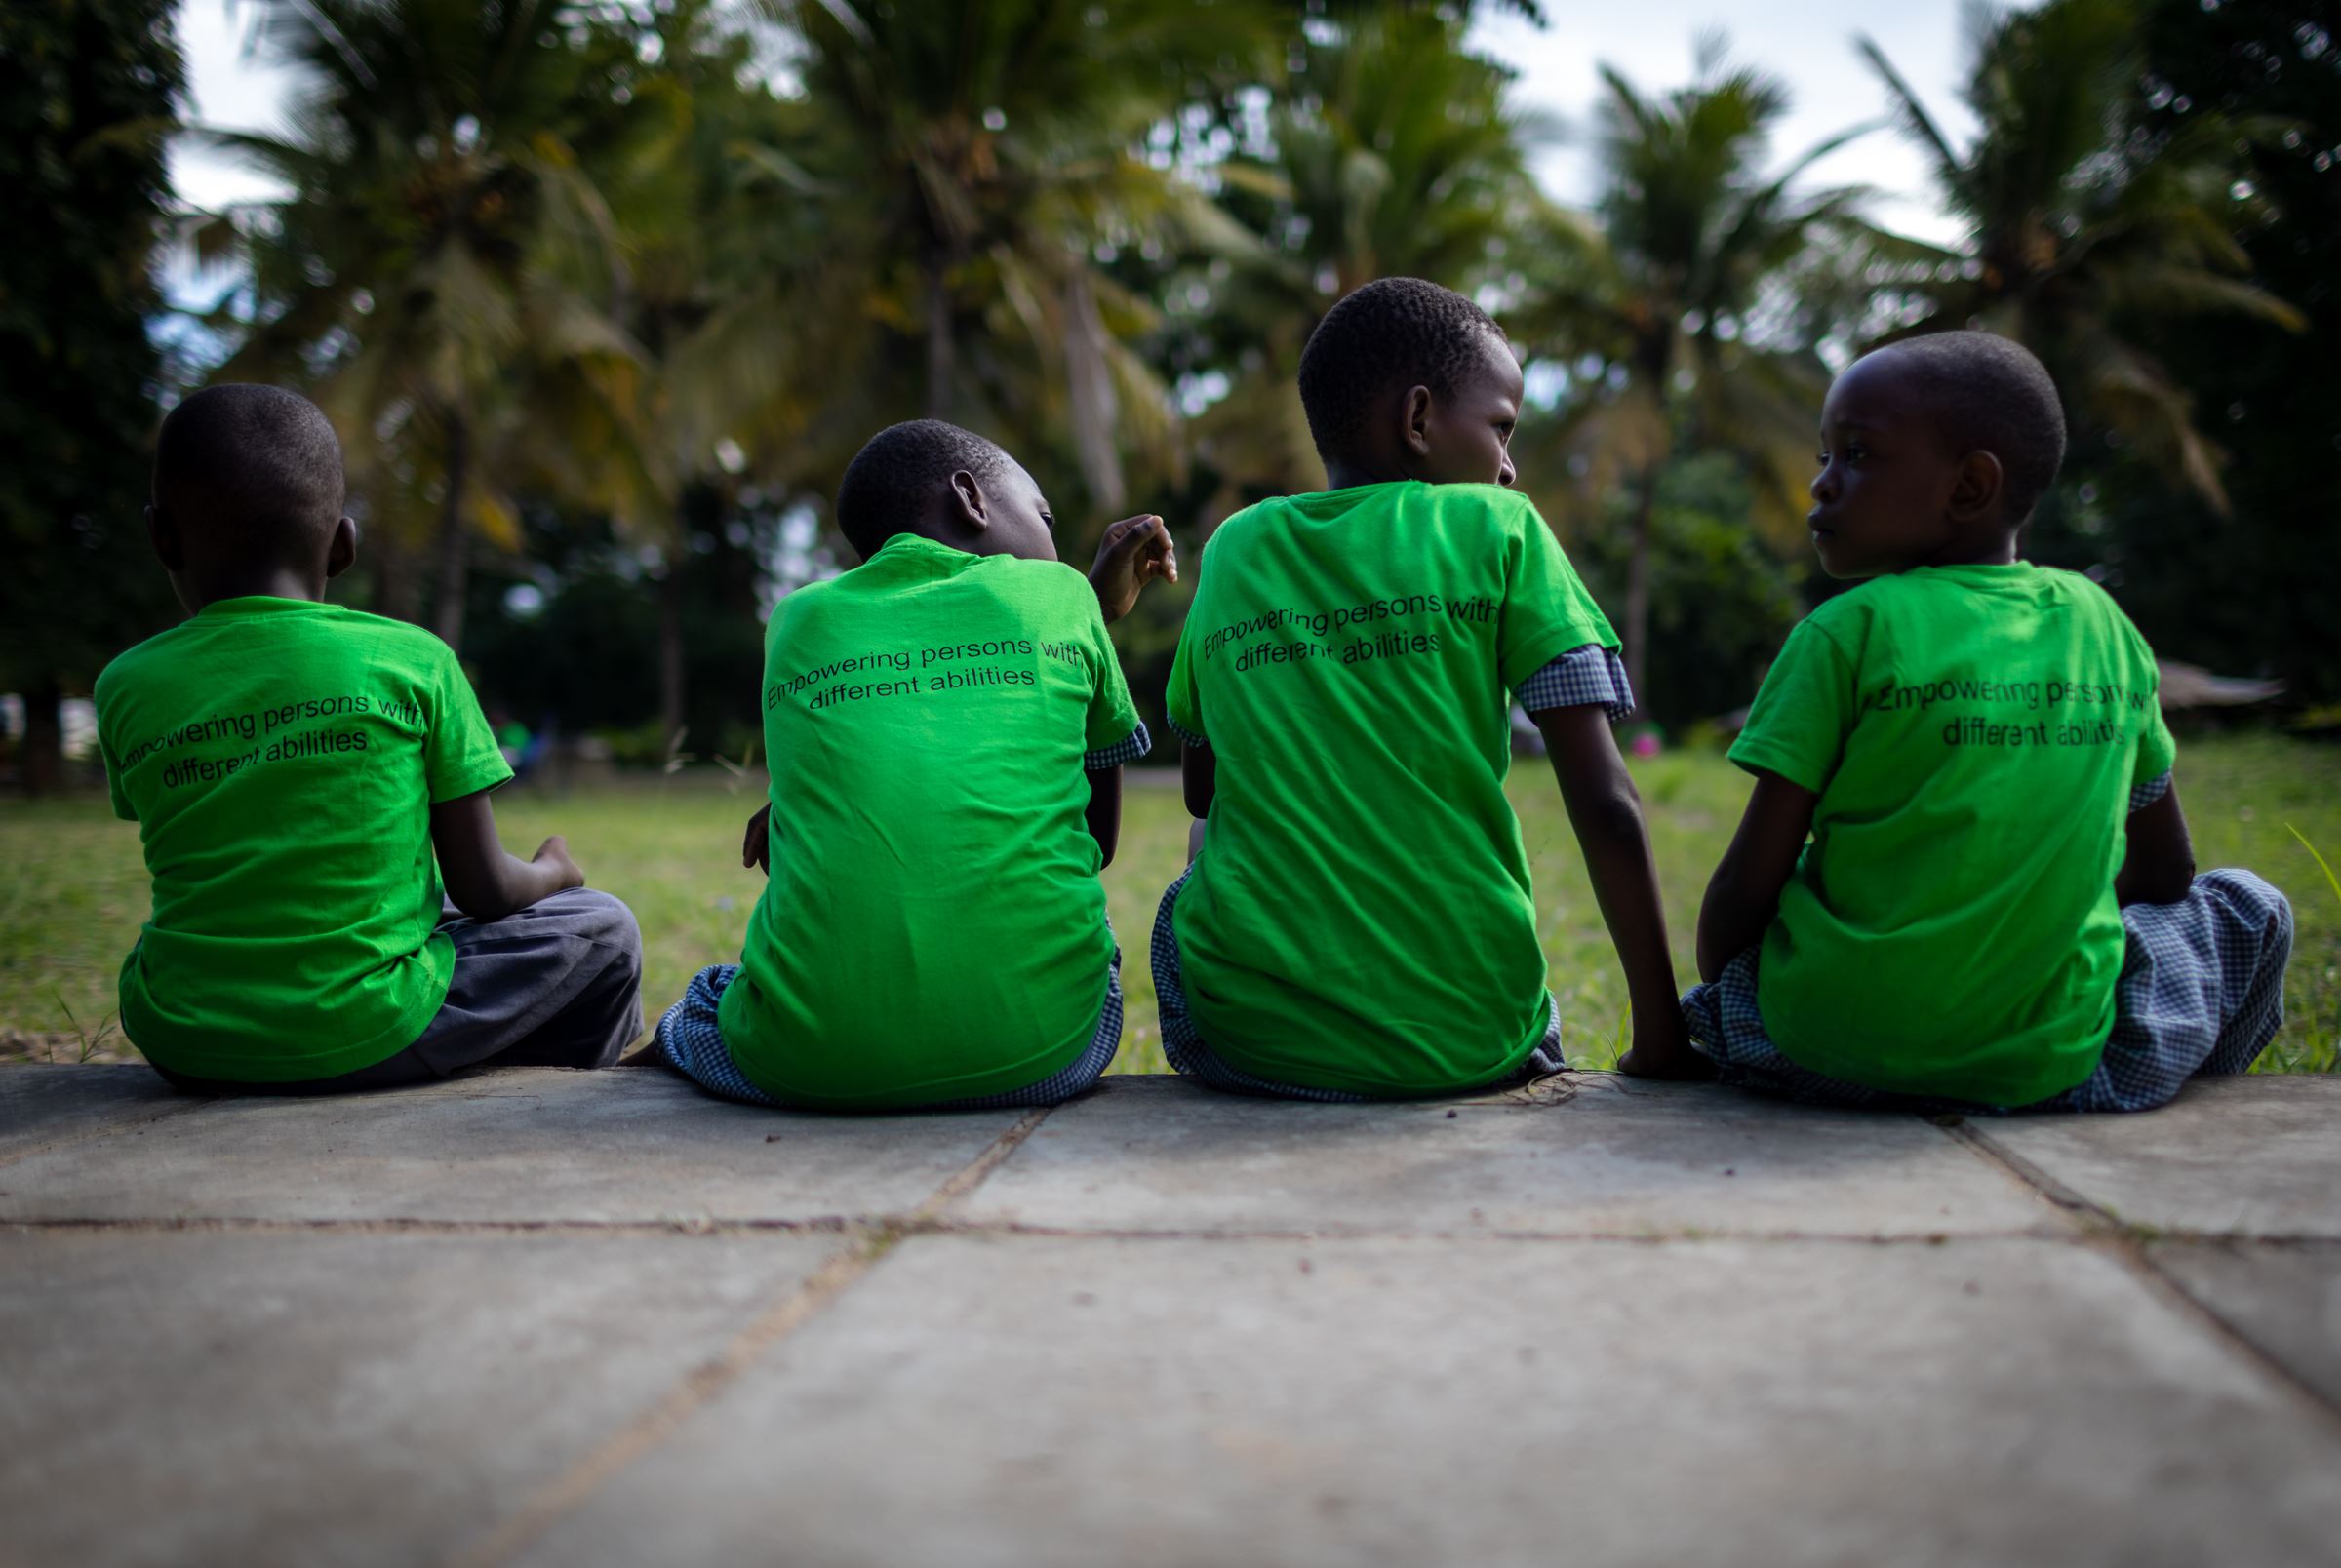 Eine Kindergruppe aus Kenia trägt grüne T-Shirts. (Quelle: Lars Heidrich)